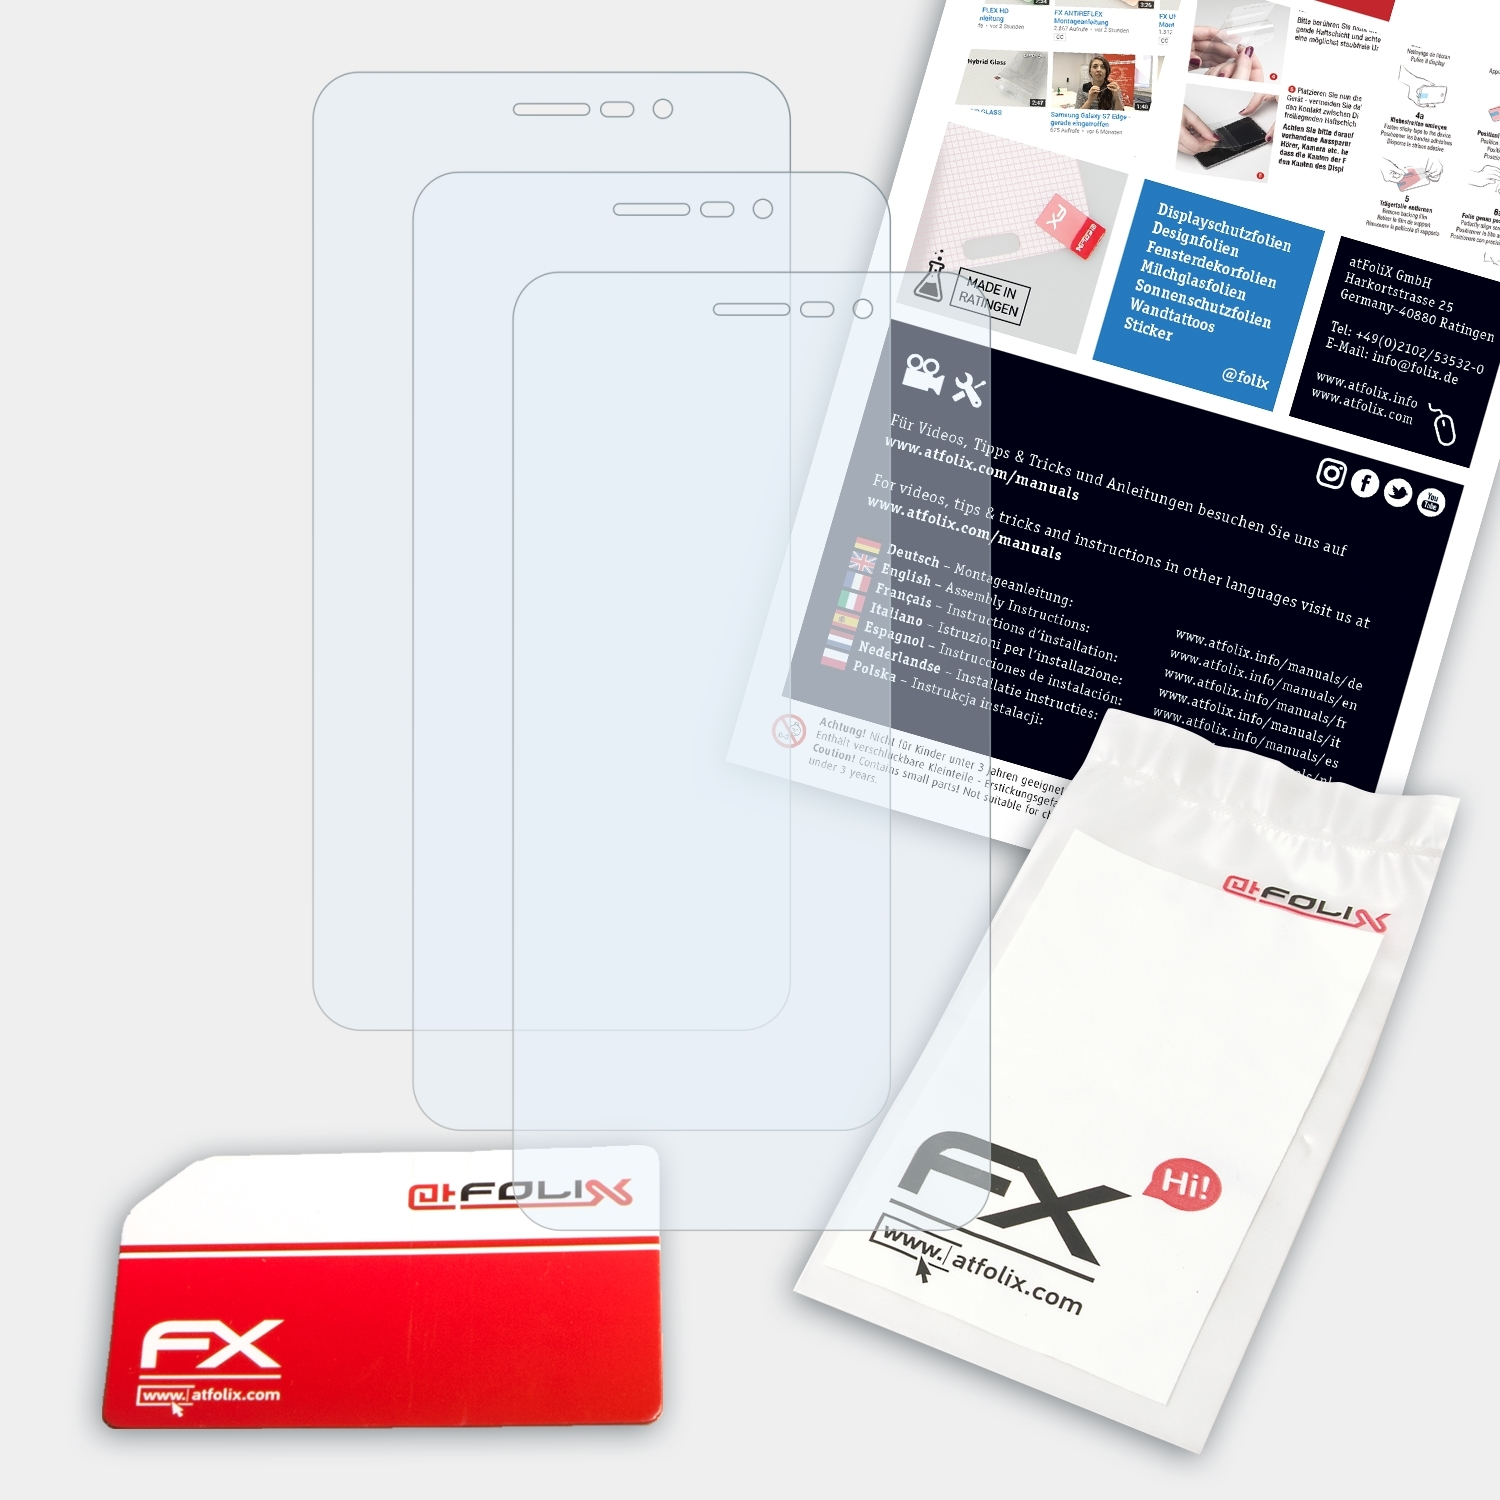 ATFOLIX 3x FX-Clear Displayschutz(für Medion S5504 (MD99905)) LIFE